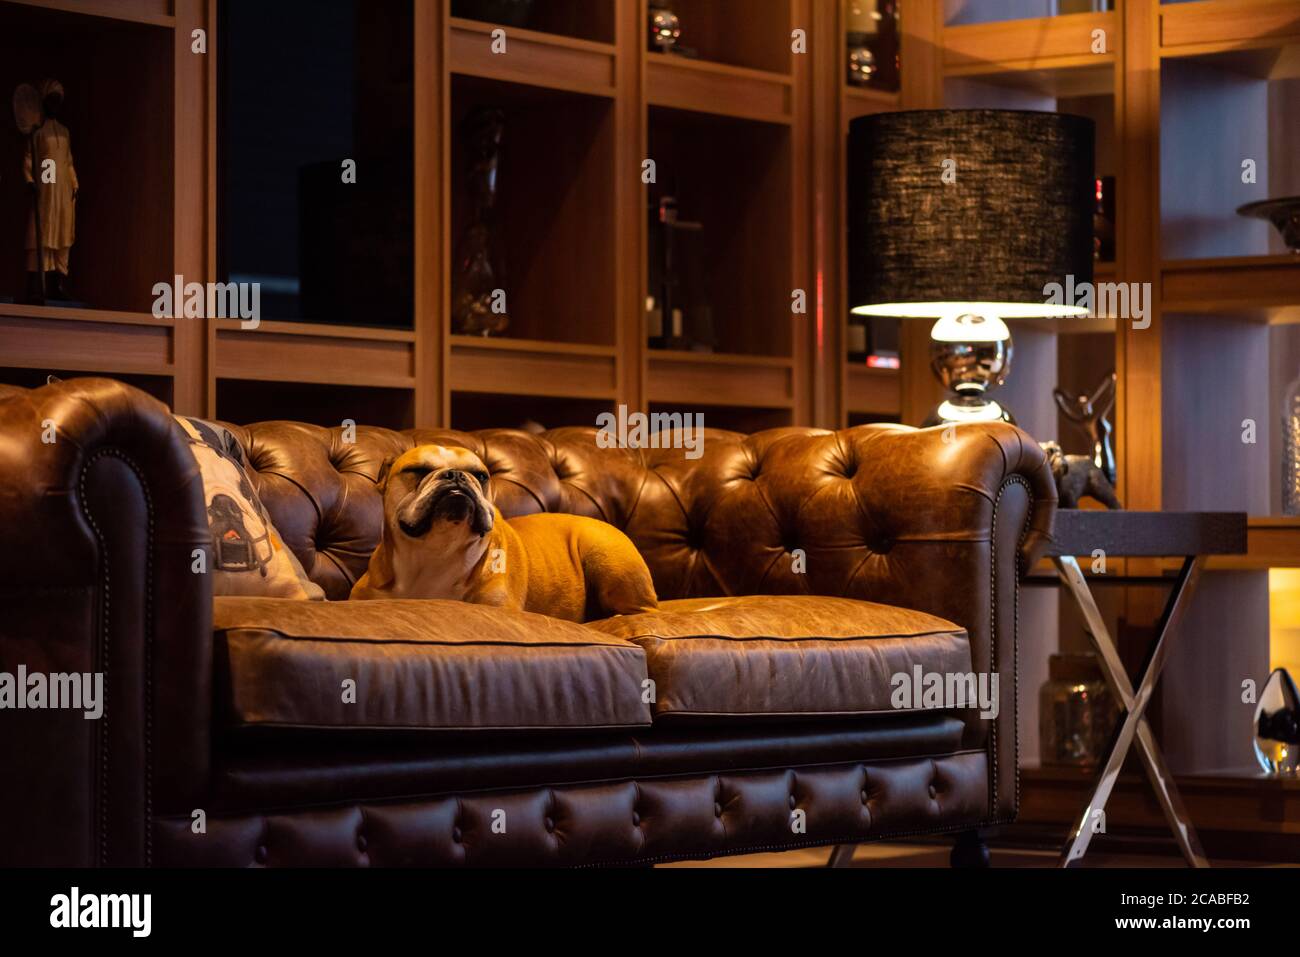 Bulldog Hund auf einer braunen Ledercouch in einem schicken Wohnzimmer  Stockfotografie - Alamy